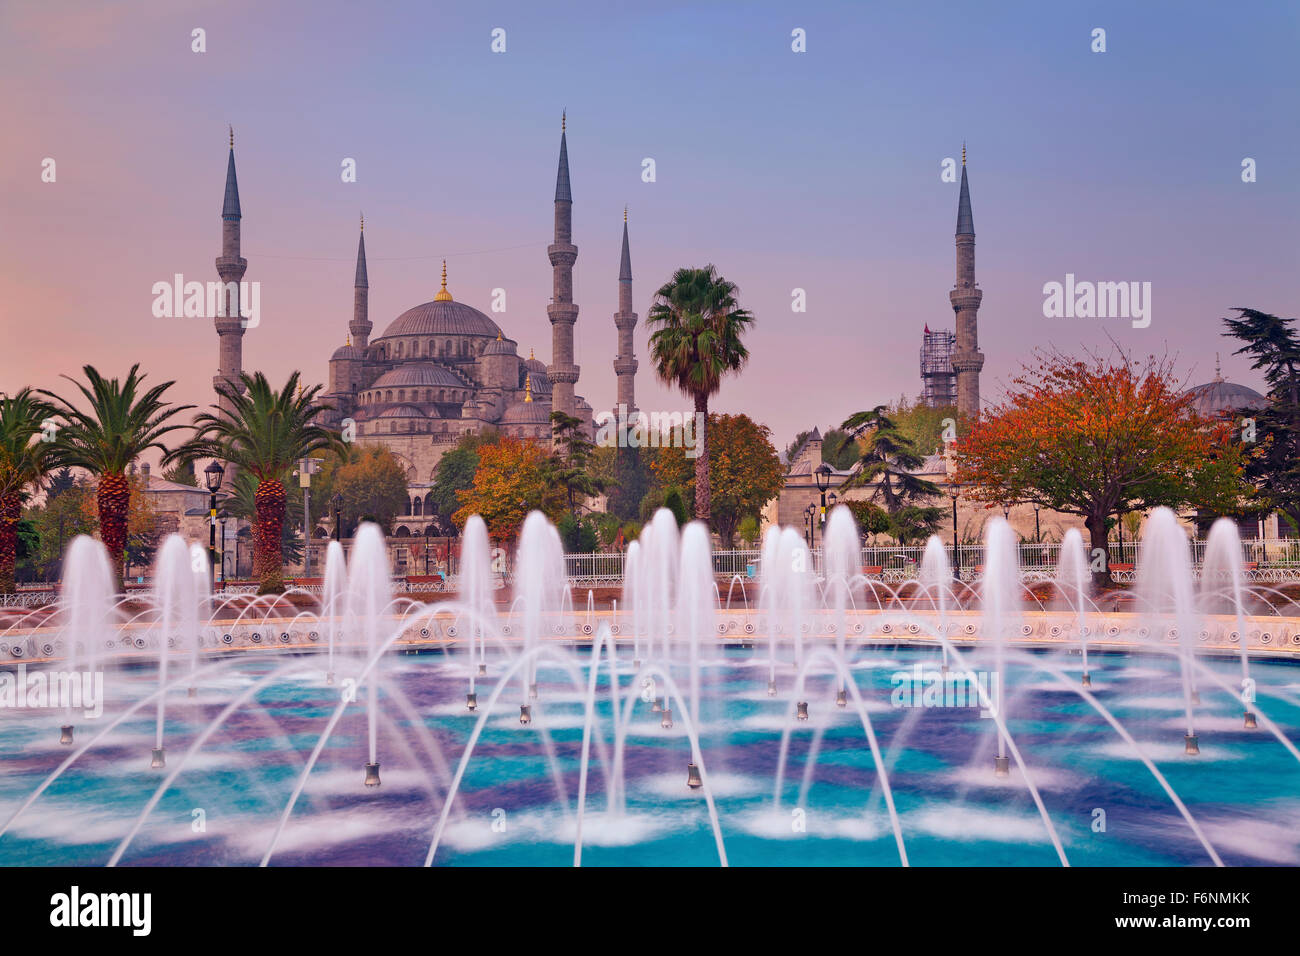 L'automne d'Istanbul. Image de la Mosquée Bleue à Istanbul, Turquie au cours de l'automne le lever du soleil. Banque D'Images